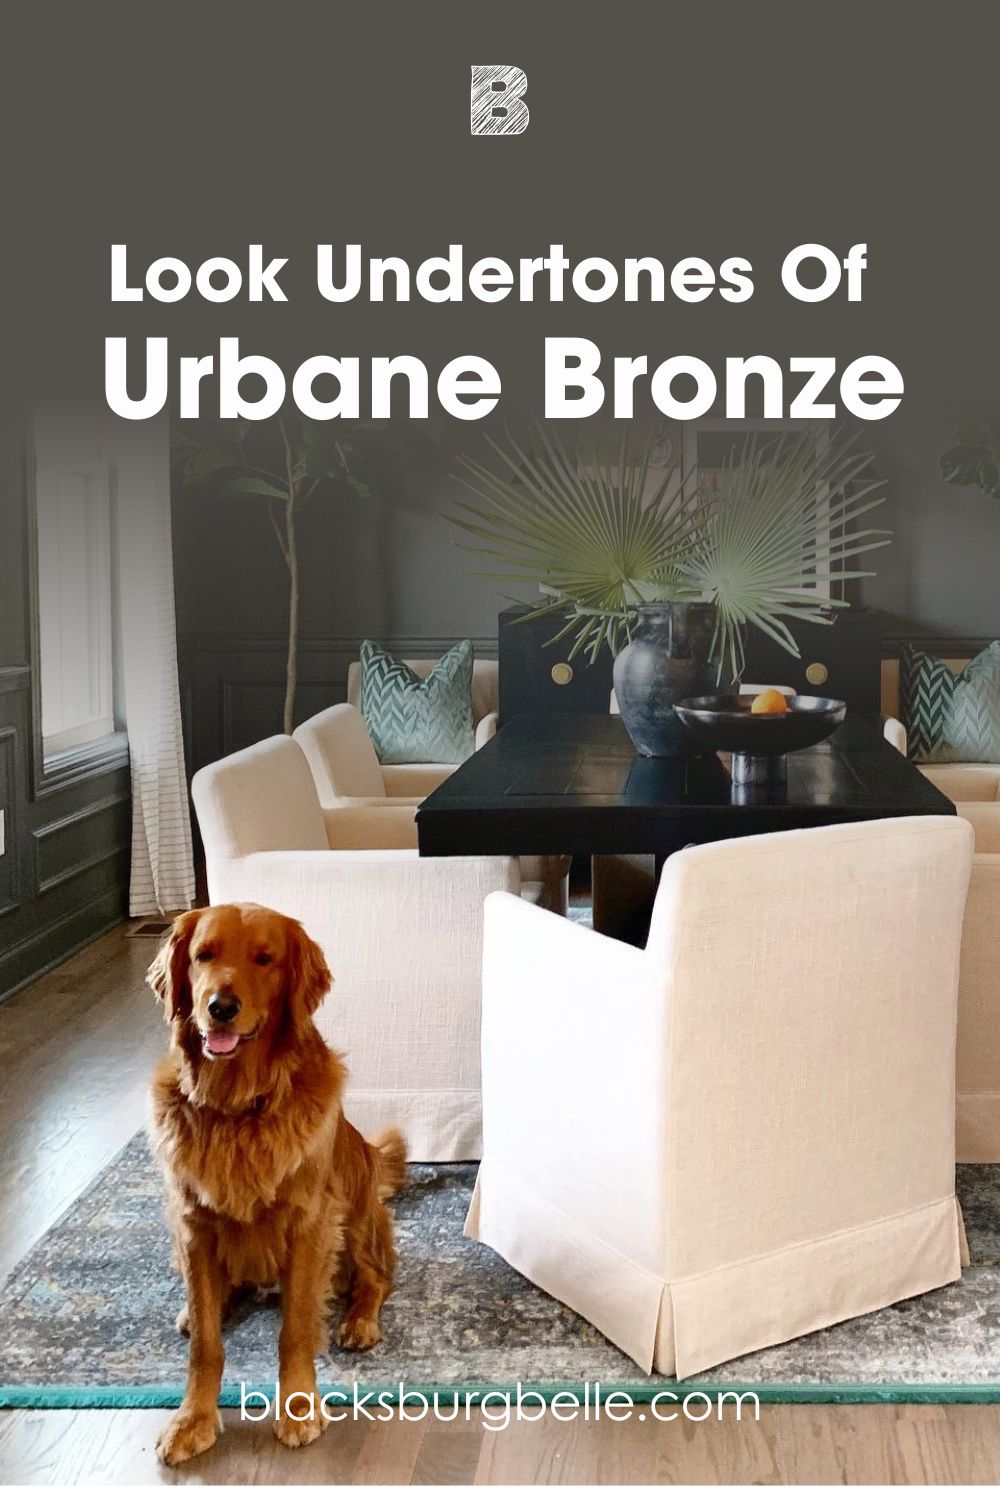 Urbane Bronze’s Undertones